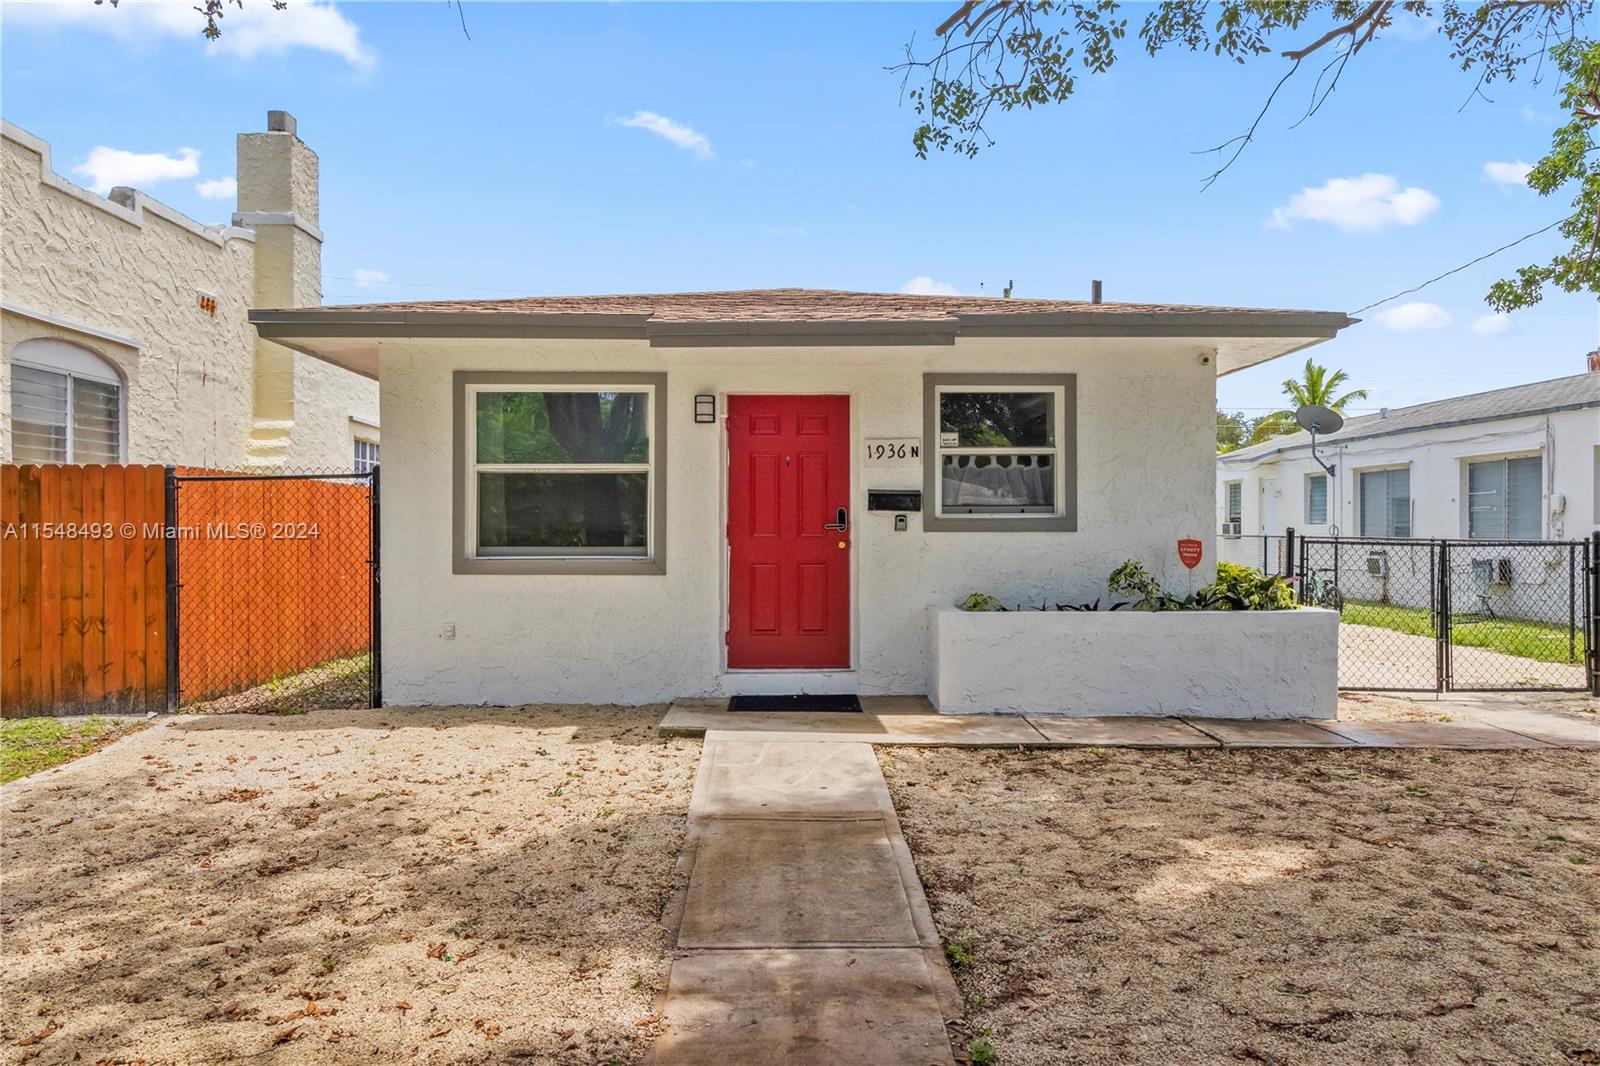 Rental Property at 1936 Washington St St, Hollywood, Broward County, Florida -  - $795,000 MO.